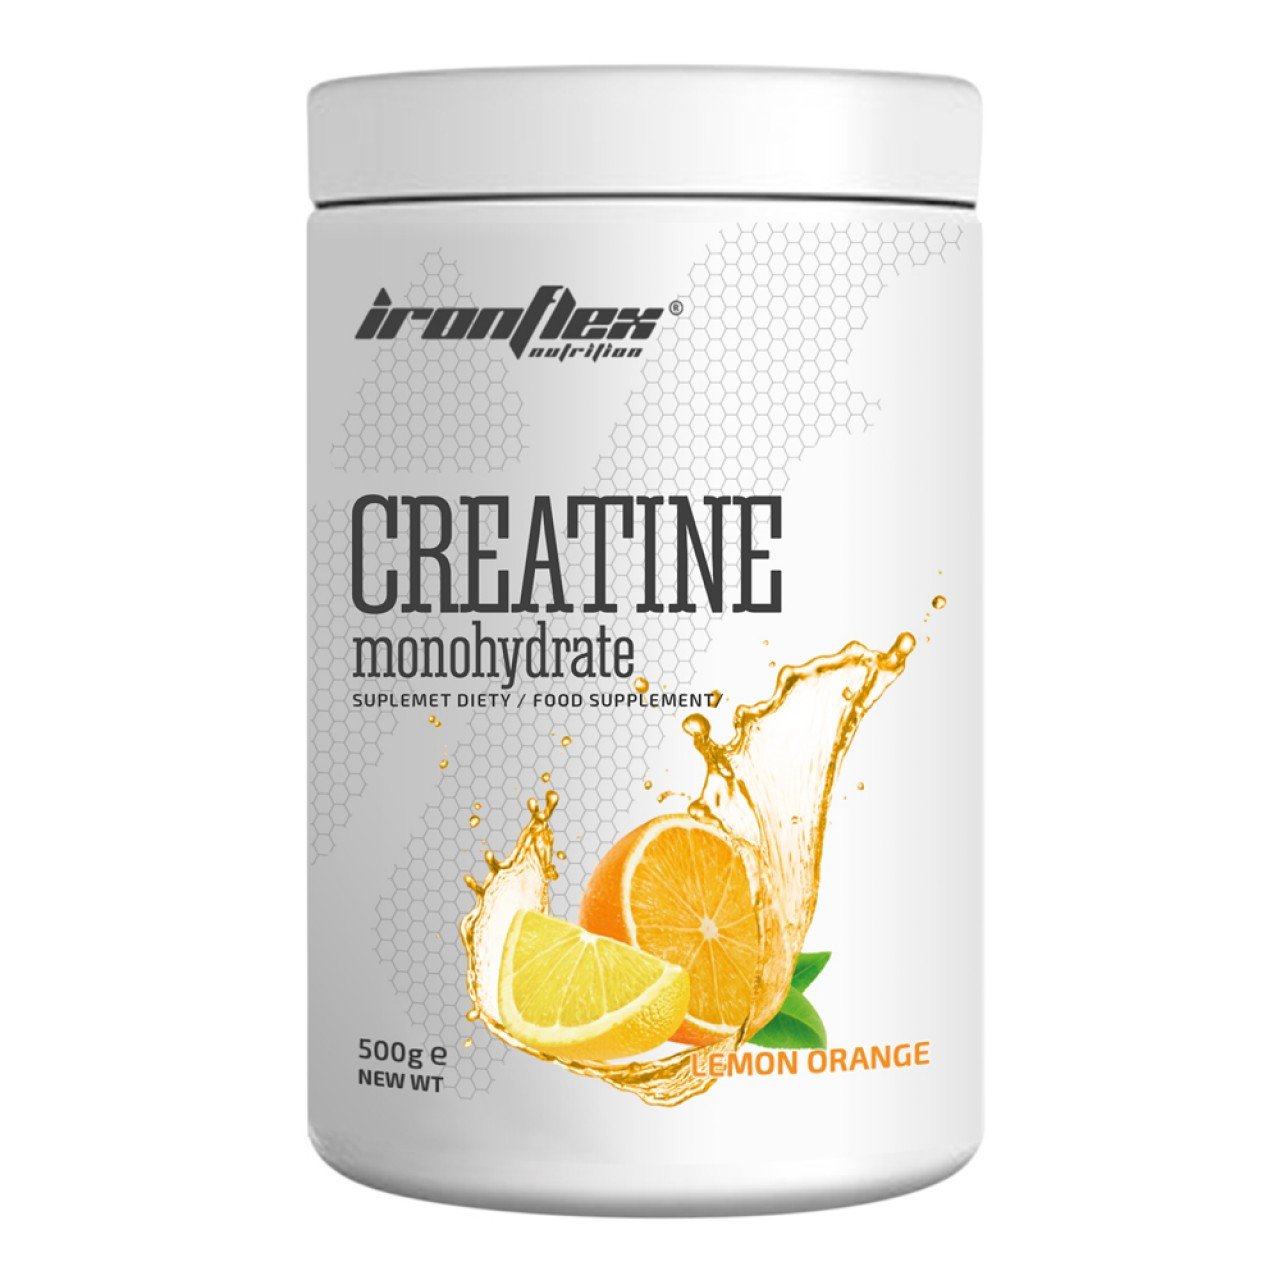 Креатин моногидрат Iron Flex Creatine monohydrate 500 грамм Лимон апельсин,  мл, IronFlex. Креатин моногидрат. Набор массы Энергия и выносливость Увеличение силы 